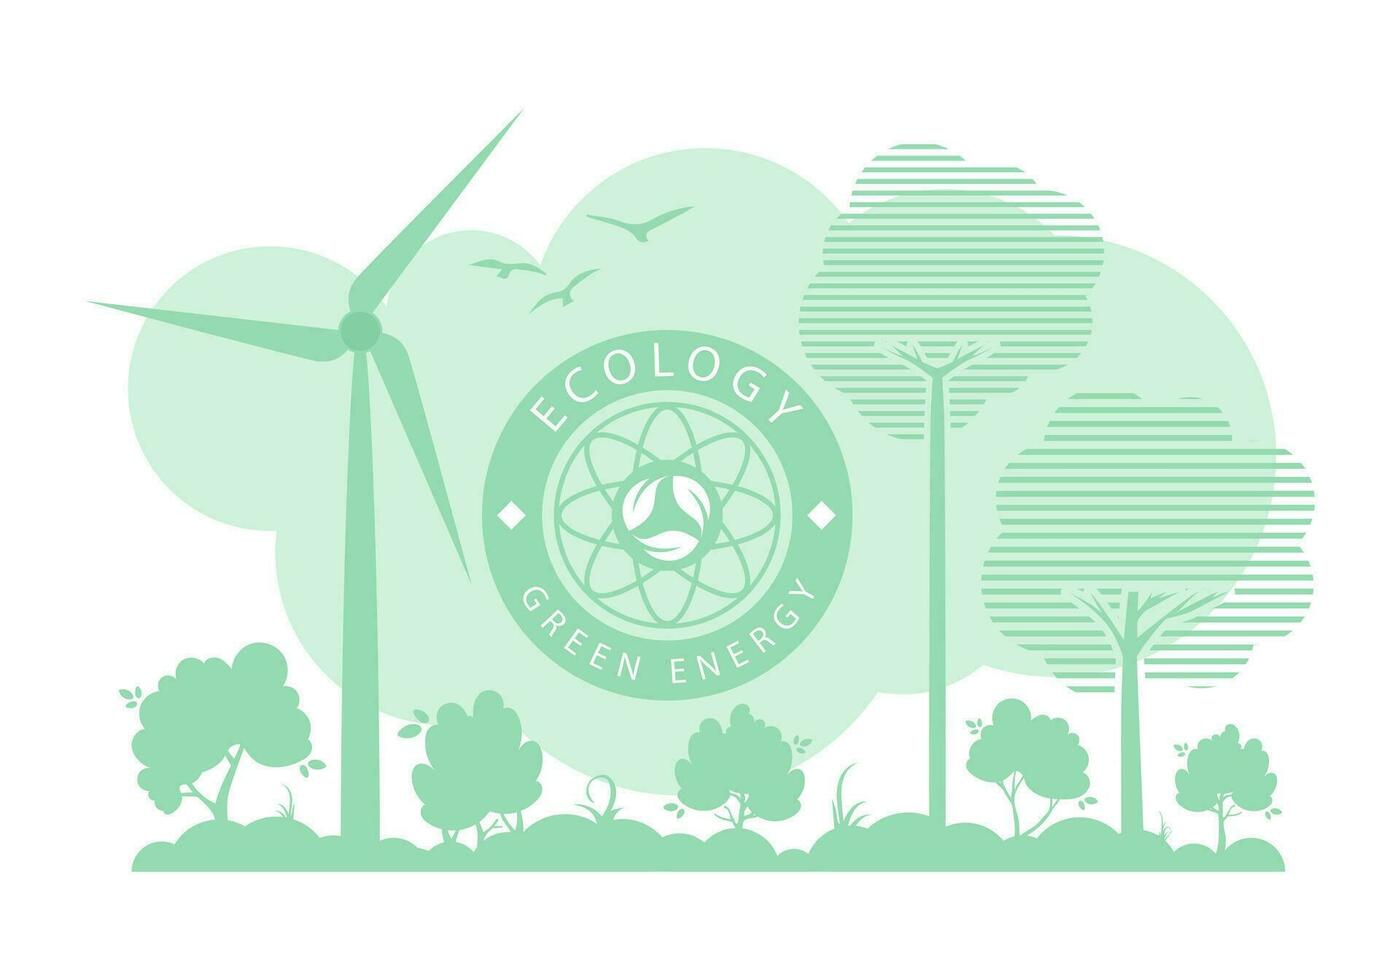 groen achtergrond Aan de thema van ecologie en groen energie. vector illustratie.